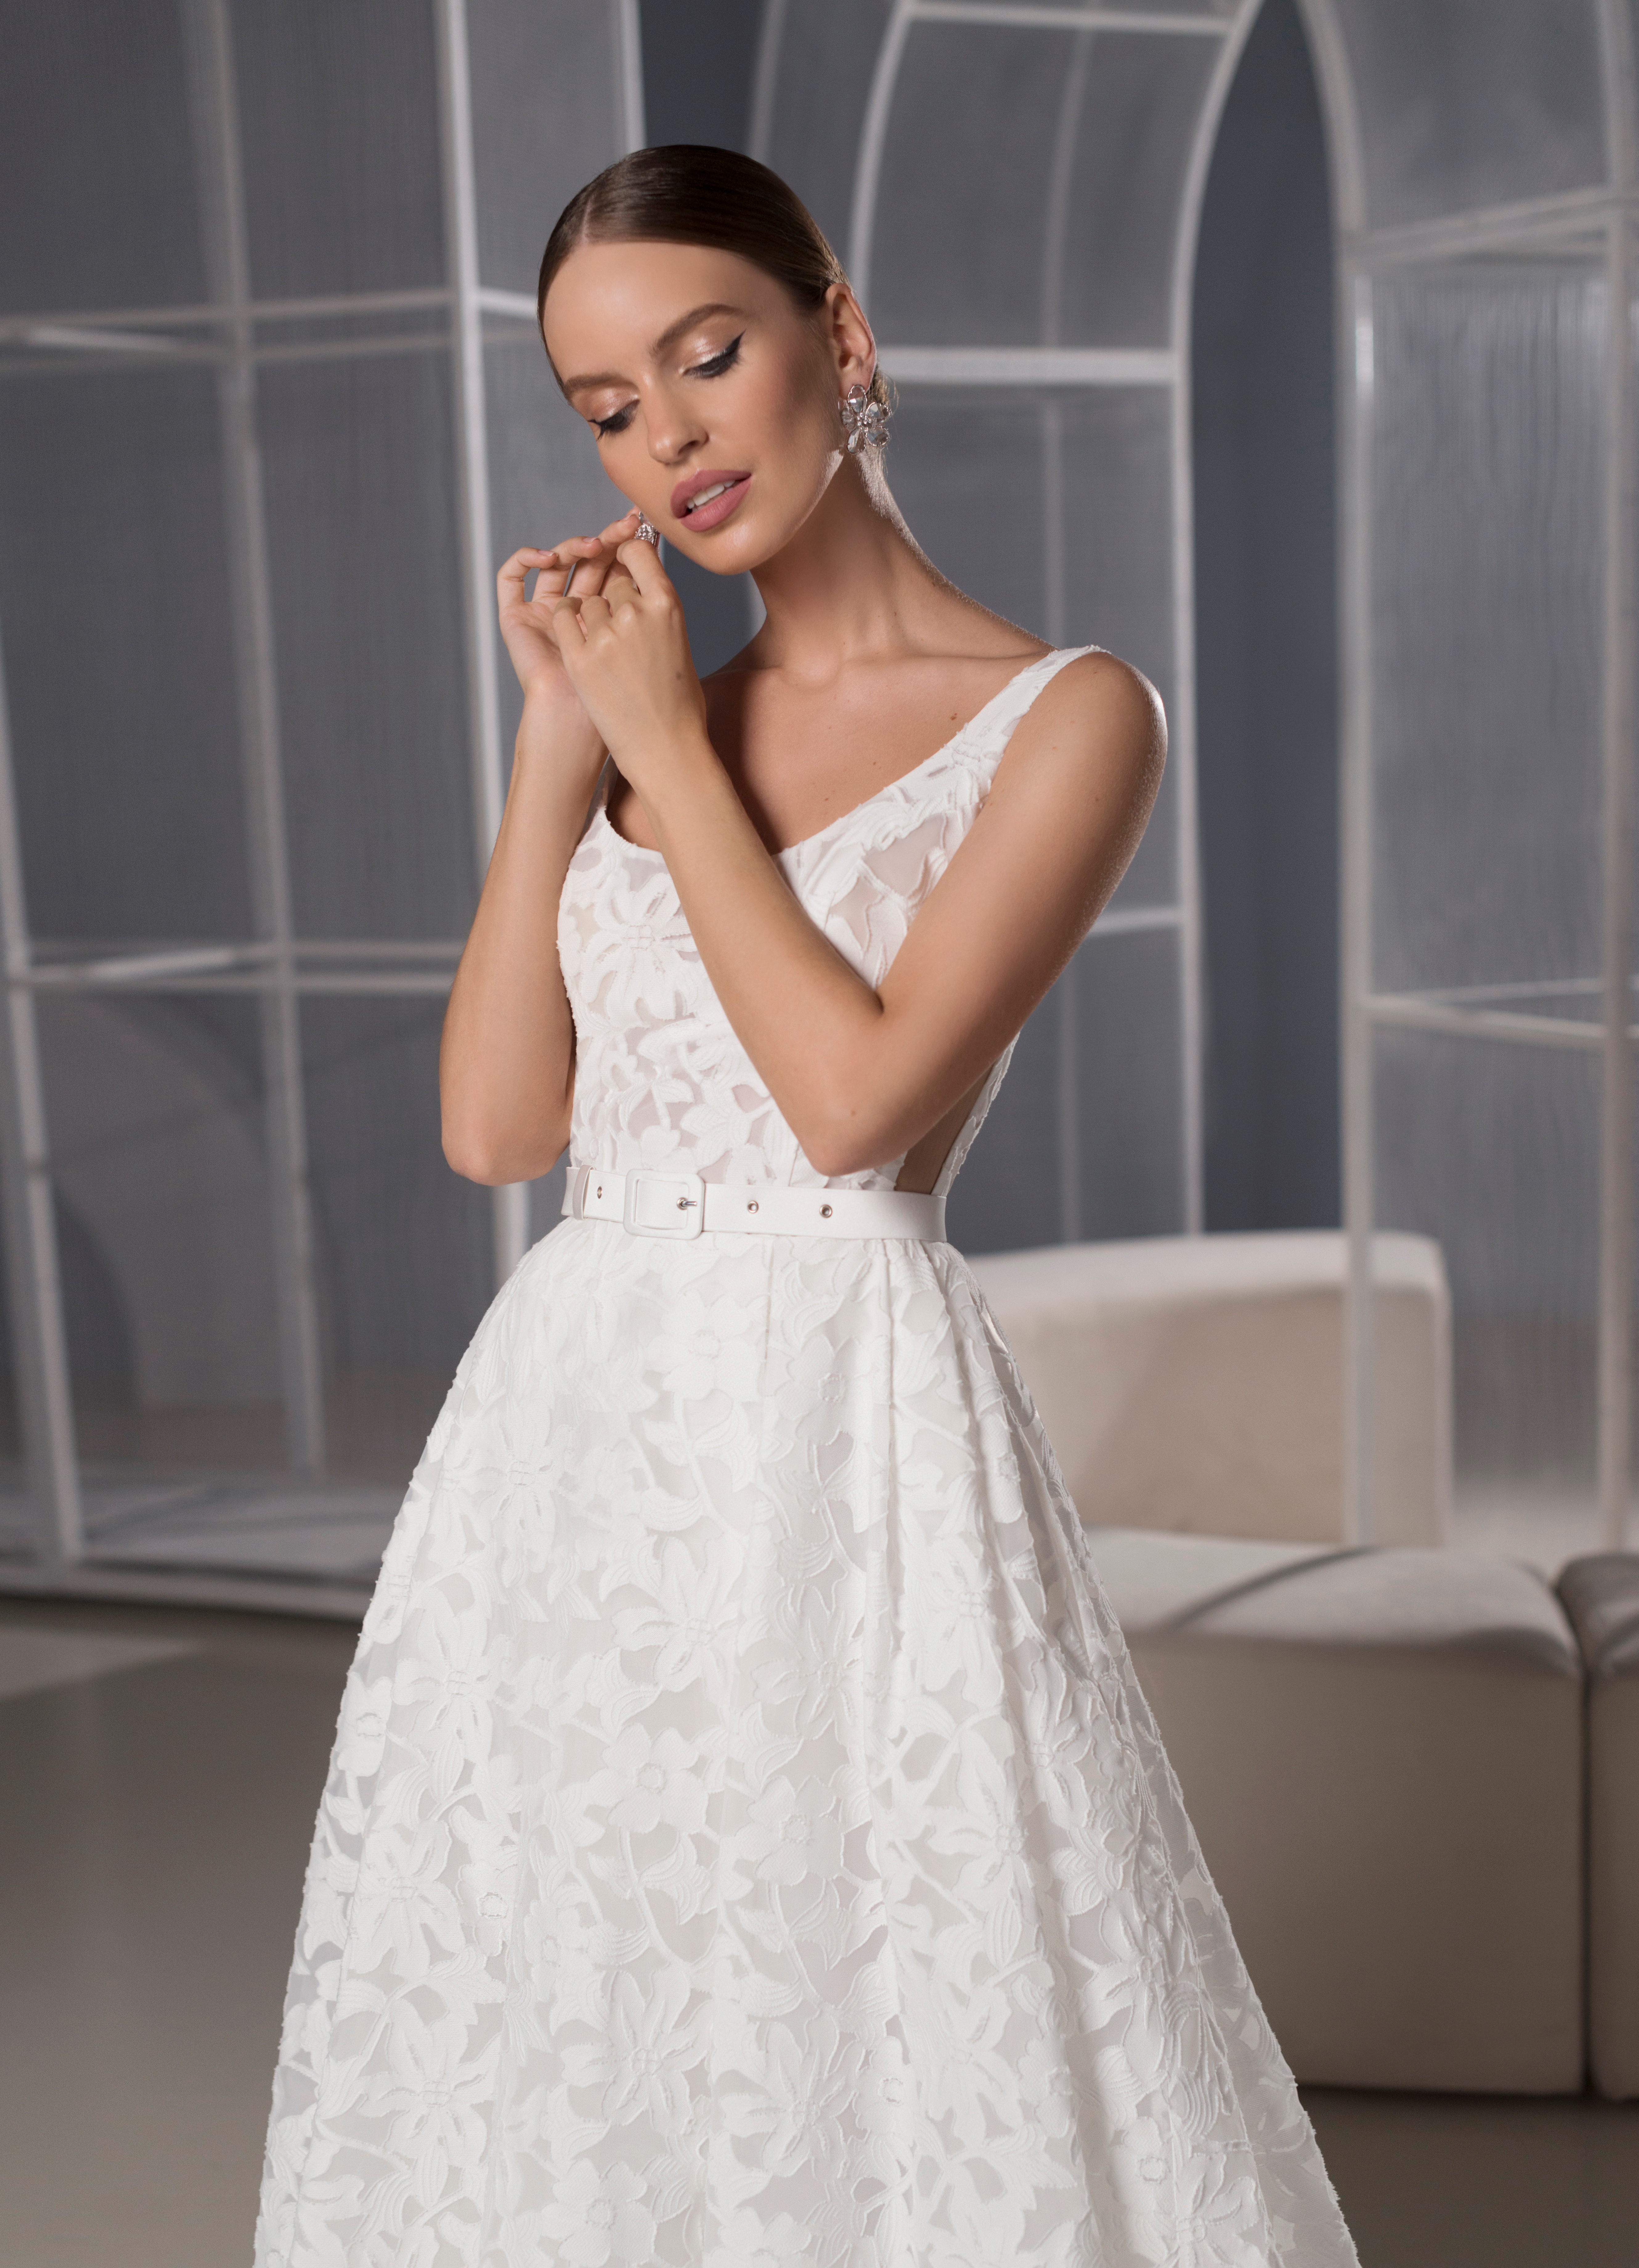 Купить свадебное платье «Виджая» Мэрри Марк из коллекции 2022 года в Мэри Трюфель